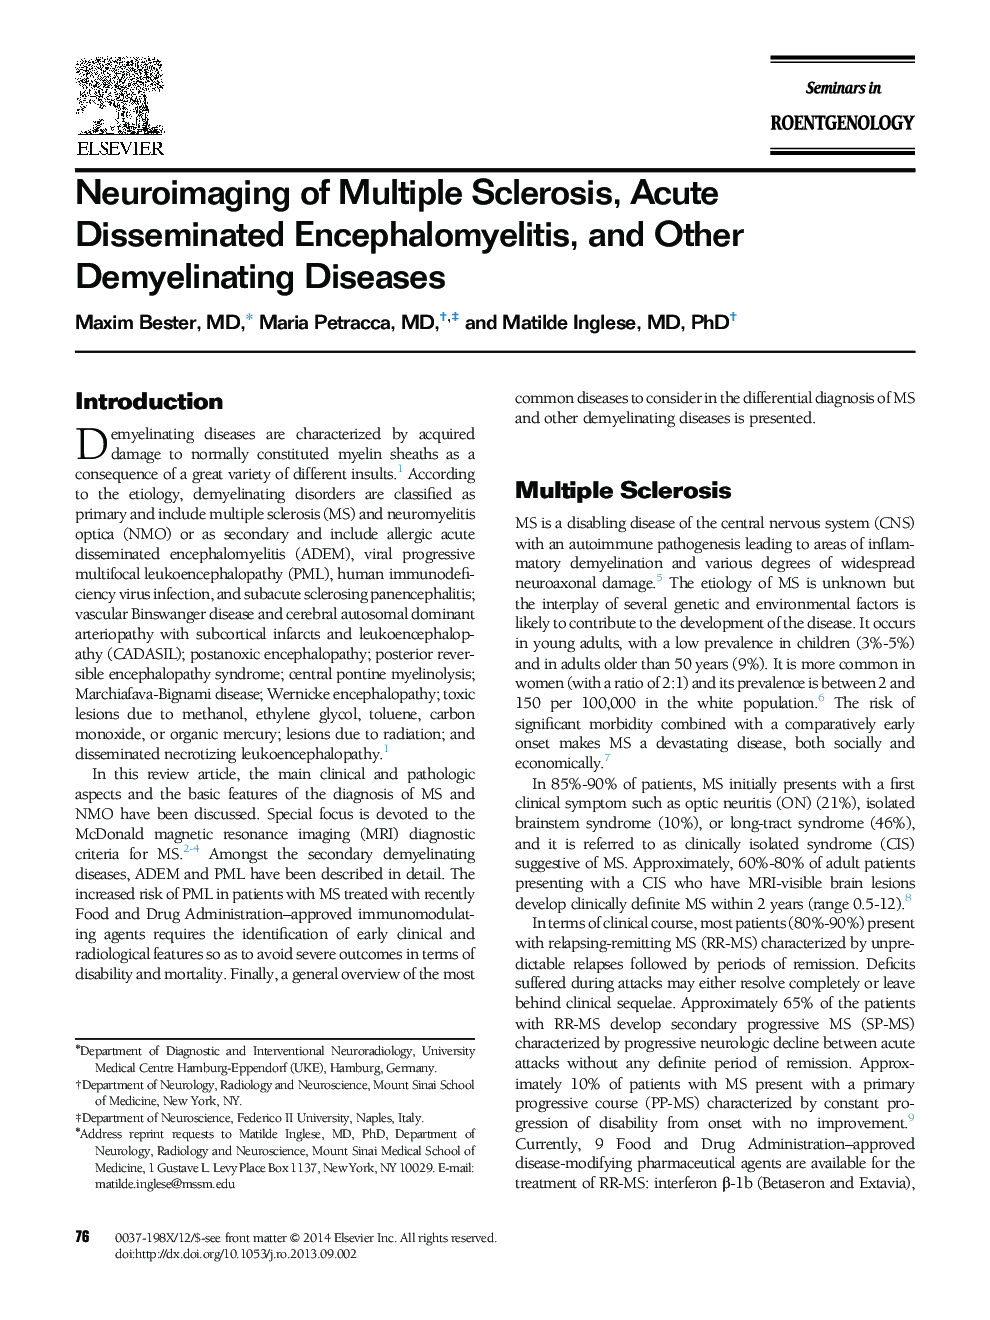 Neuroimaging of Multiple Sclerosis, Acute Disseminated Encephalomyelitis, and Other Demyelinating Diseases